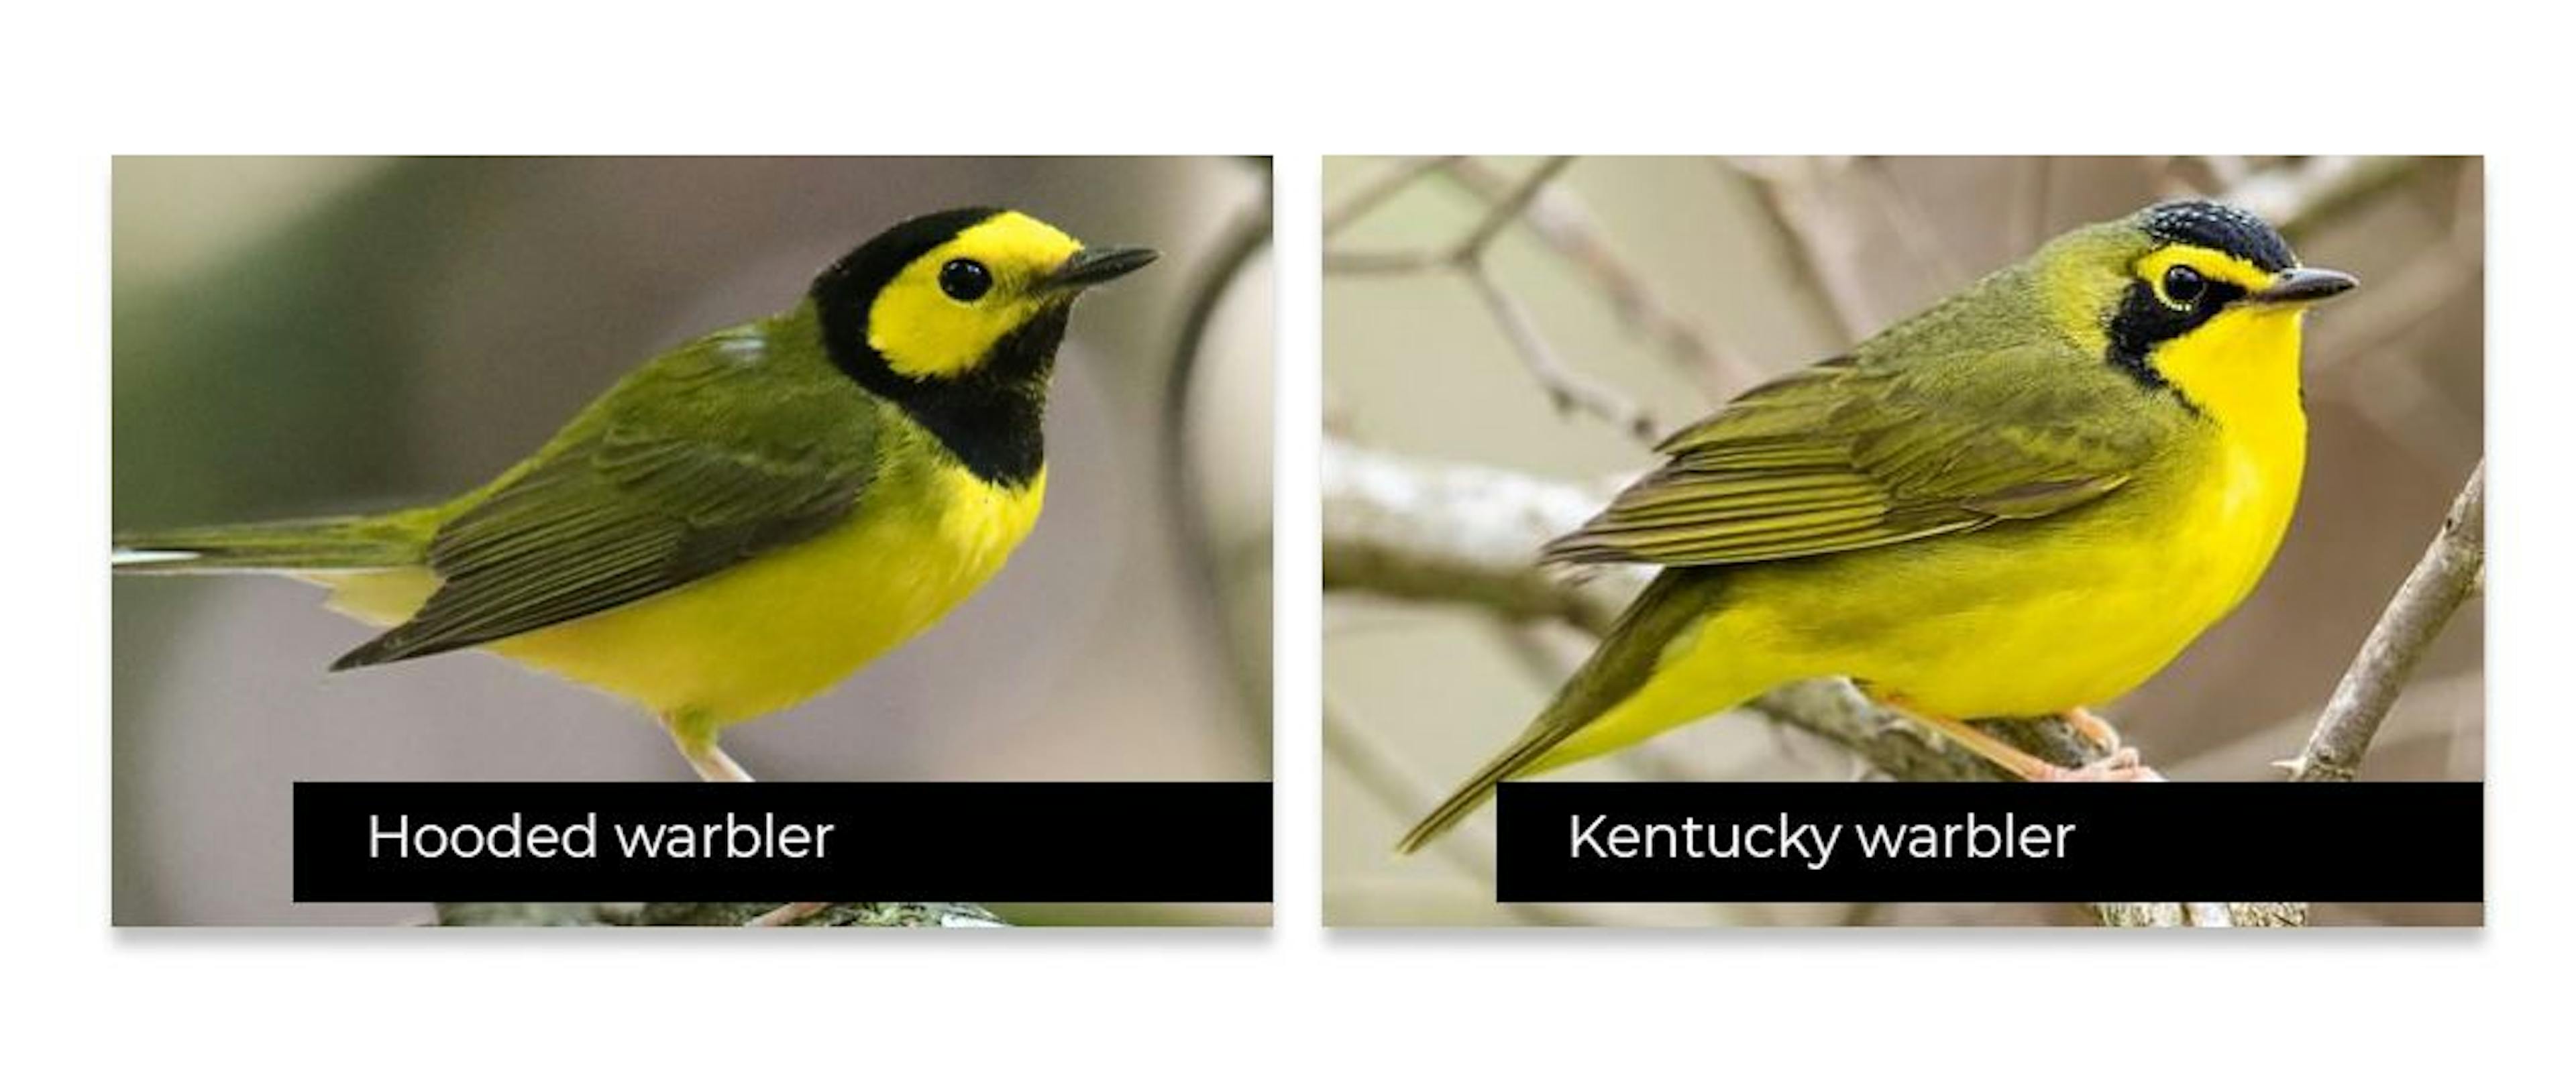 Einige Vögel sehen einander sehr ähnlich, was es schwierig macht, sie genau zu erkennen